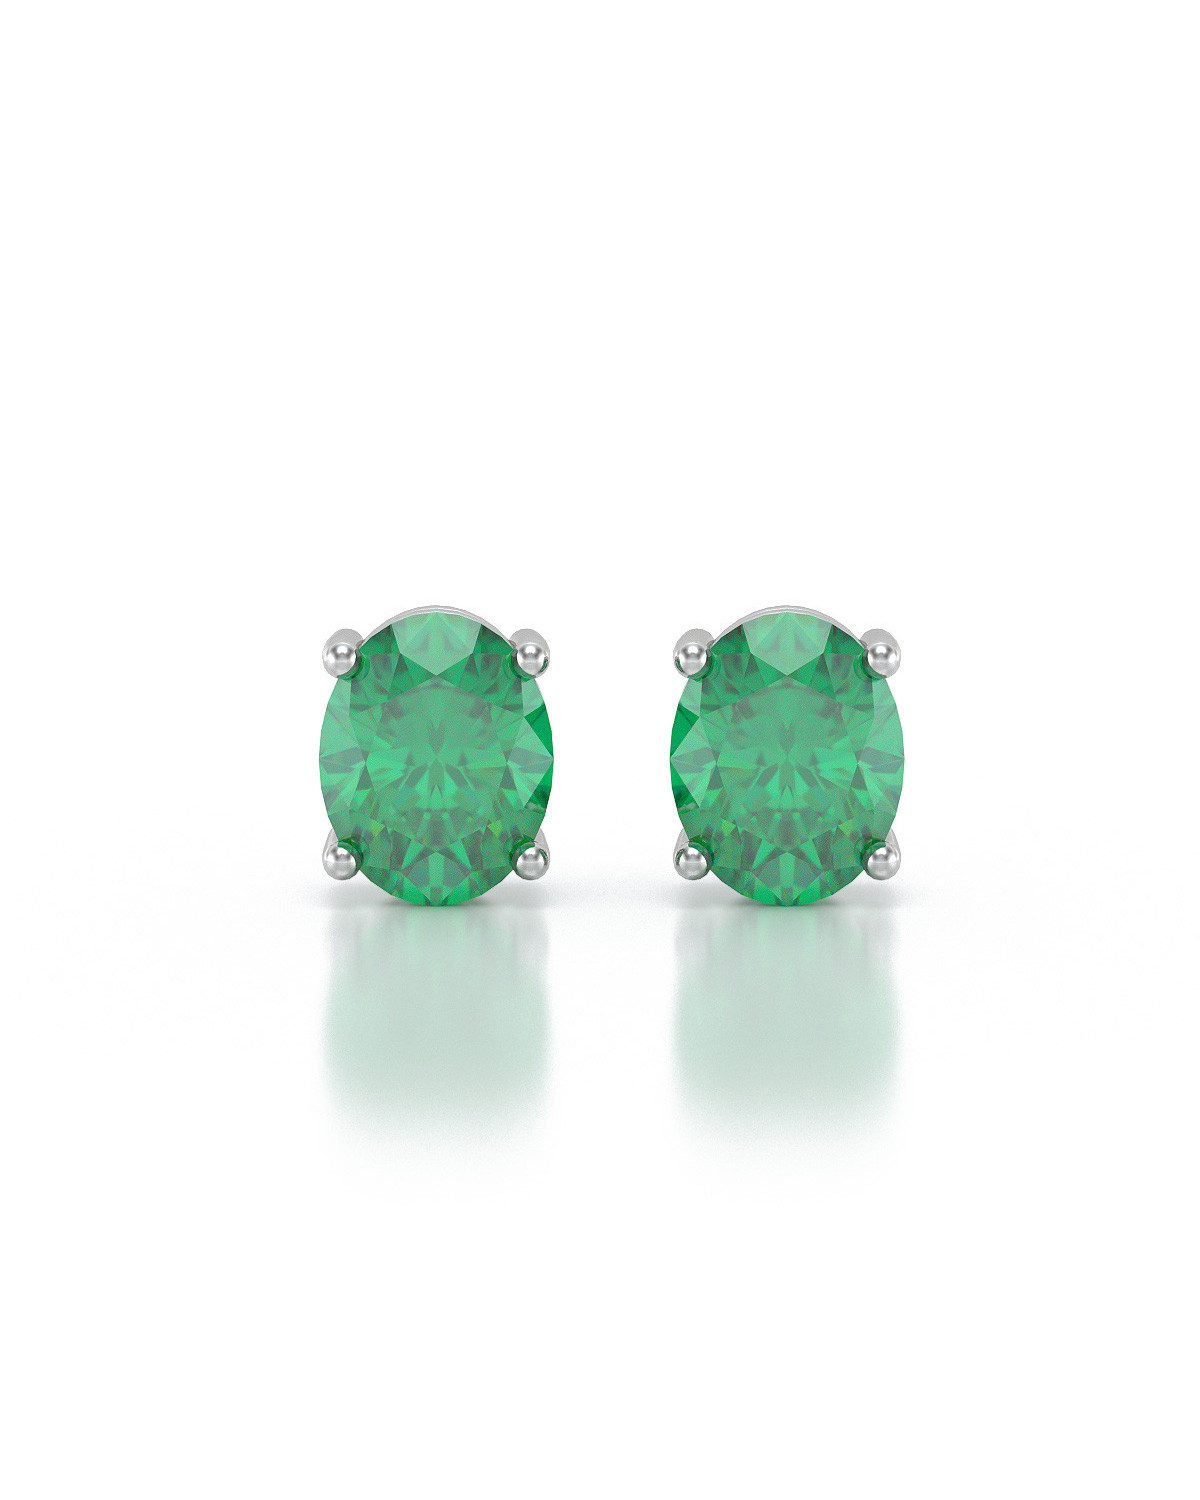 Oval Emerald Earrings in Sterling Silver 925